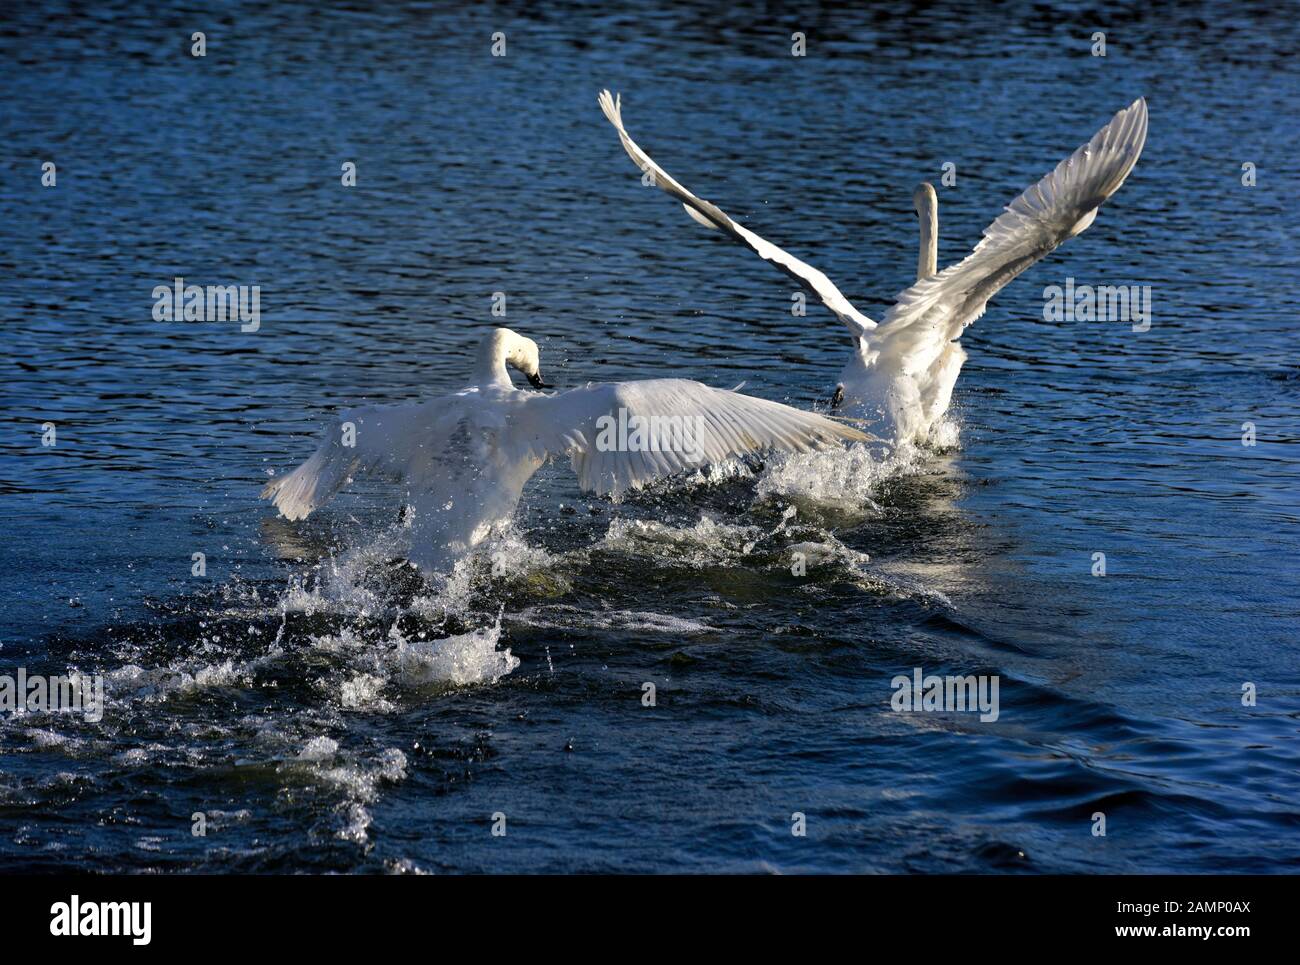 Cigni a caccia di tutta l'acqua che mostra aggressività,cigni bridge, west hallam,Ilkeston,Nottingham, Inghilterra, Regno Unito Foto Stock